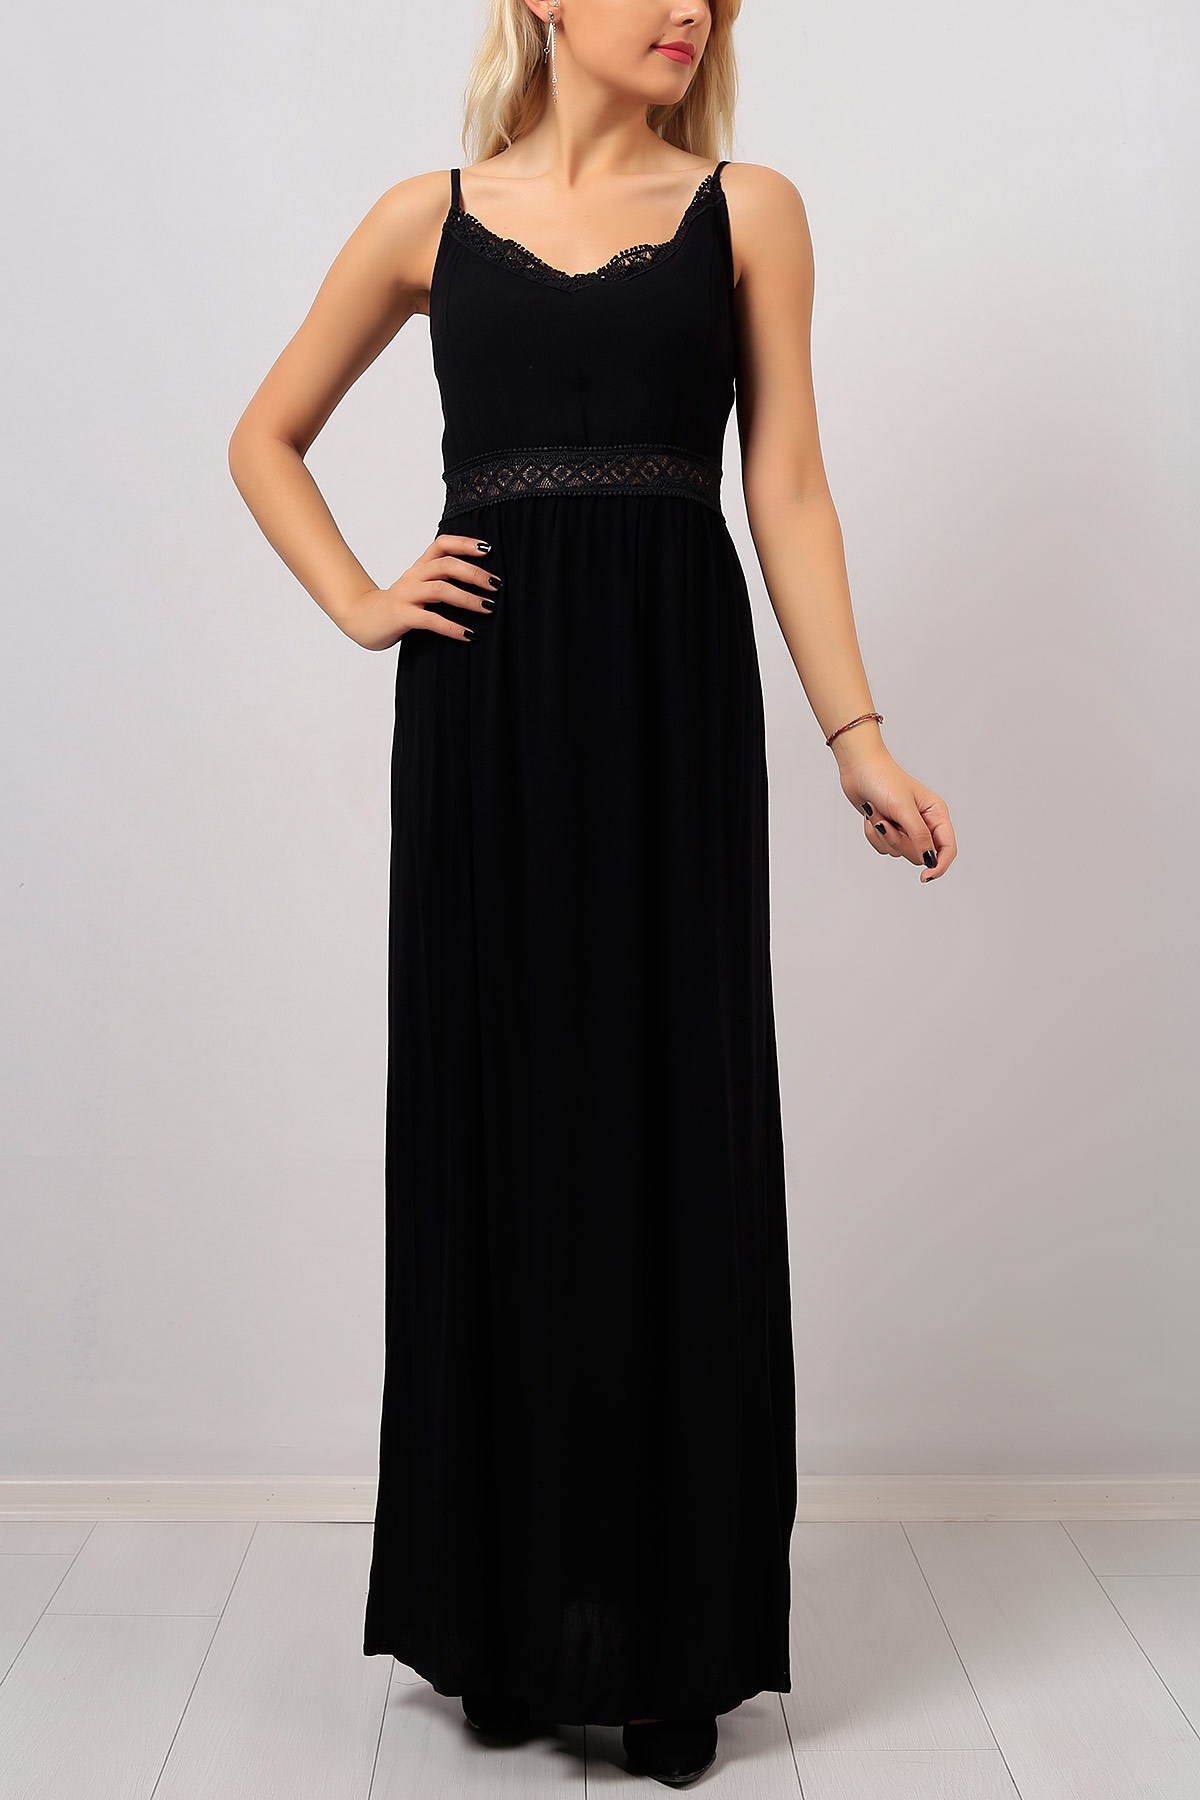 Askılı Sırt Lastikli Siyah Abiye Elbise Modeli 8147B